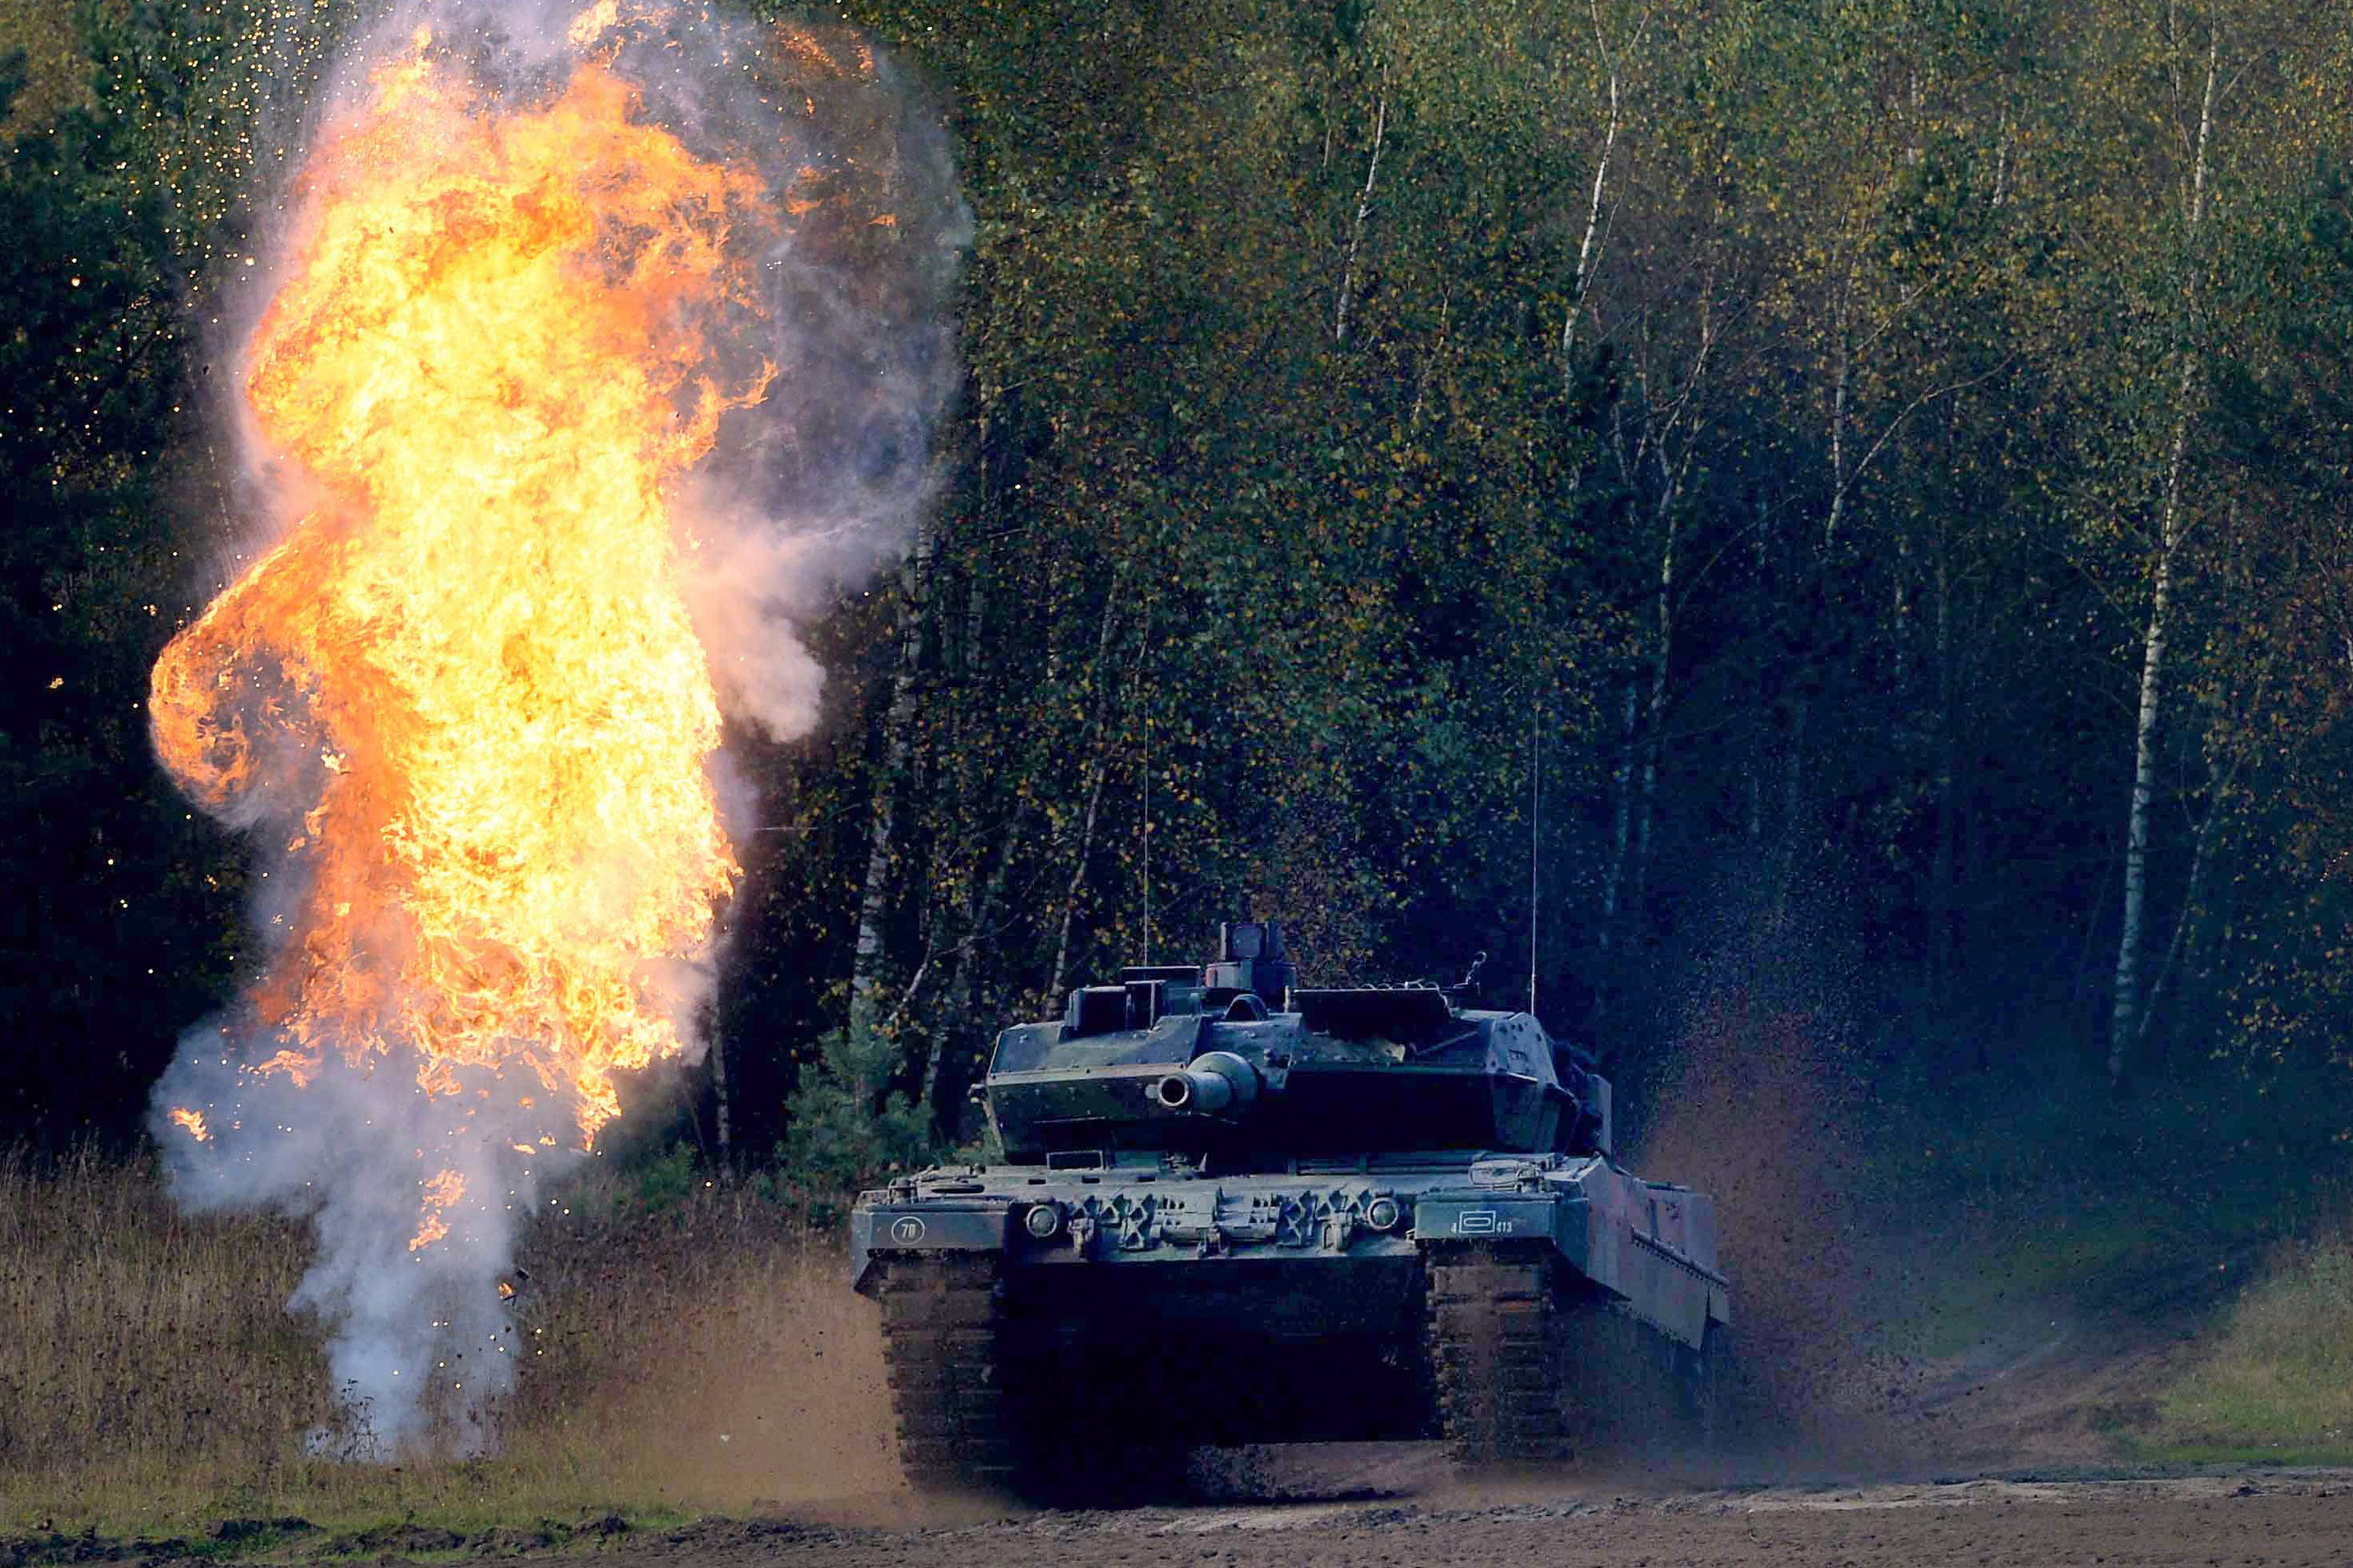 A big tanks rolls across a field with fire beside it.